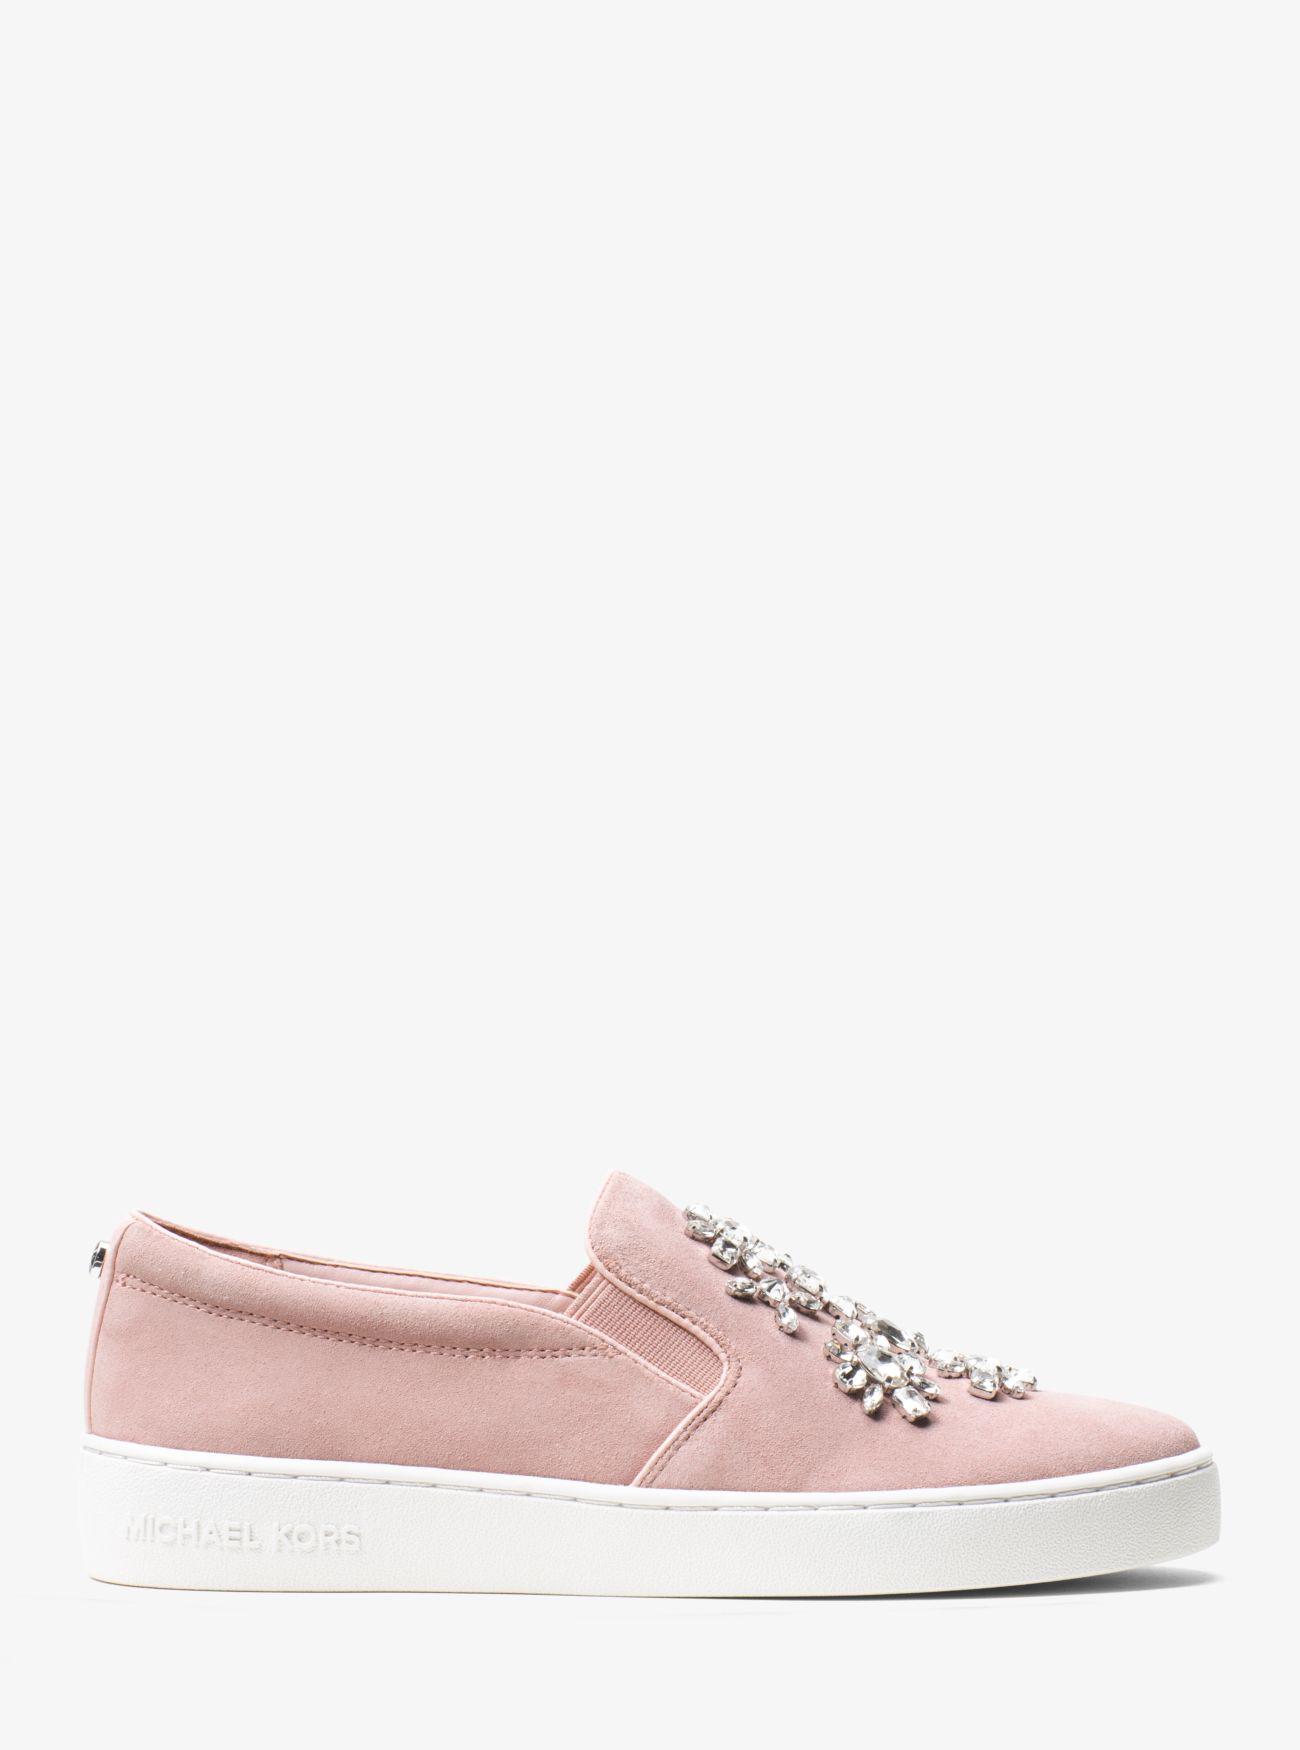 Michael Kors Keaton Embellished Suede Slip-on Sneaker in Pink | Lyst